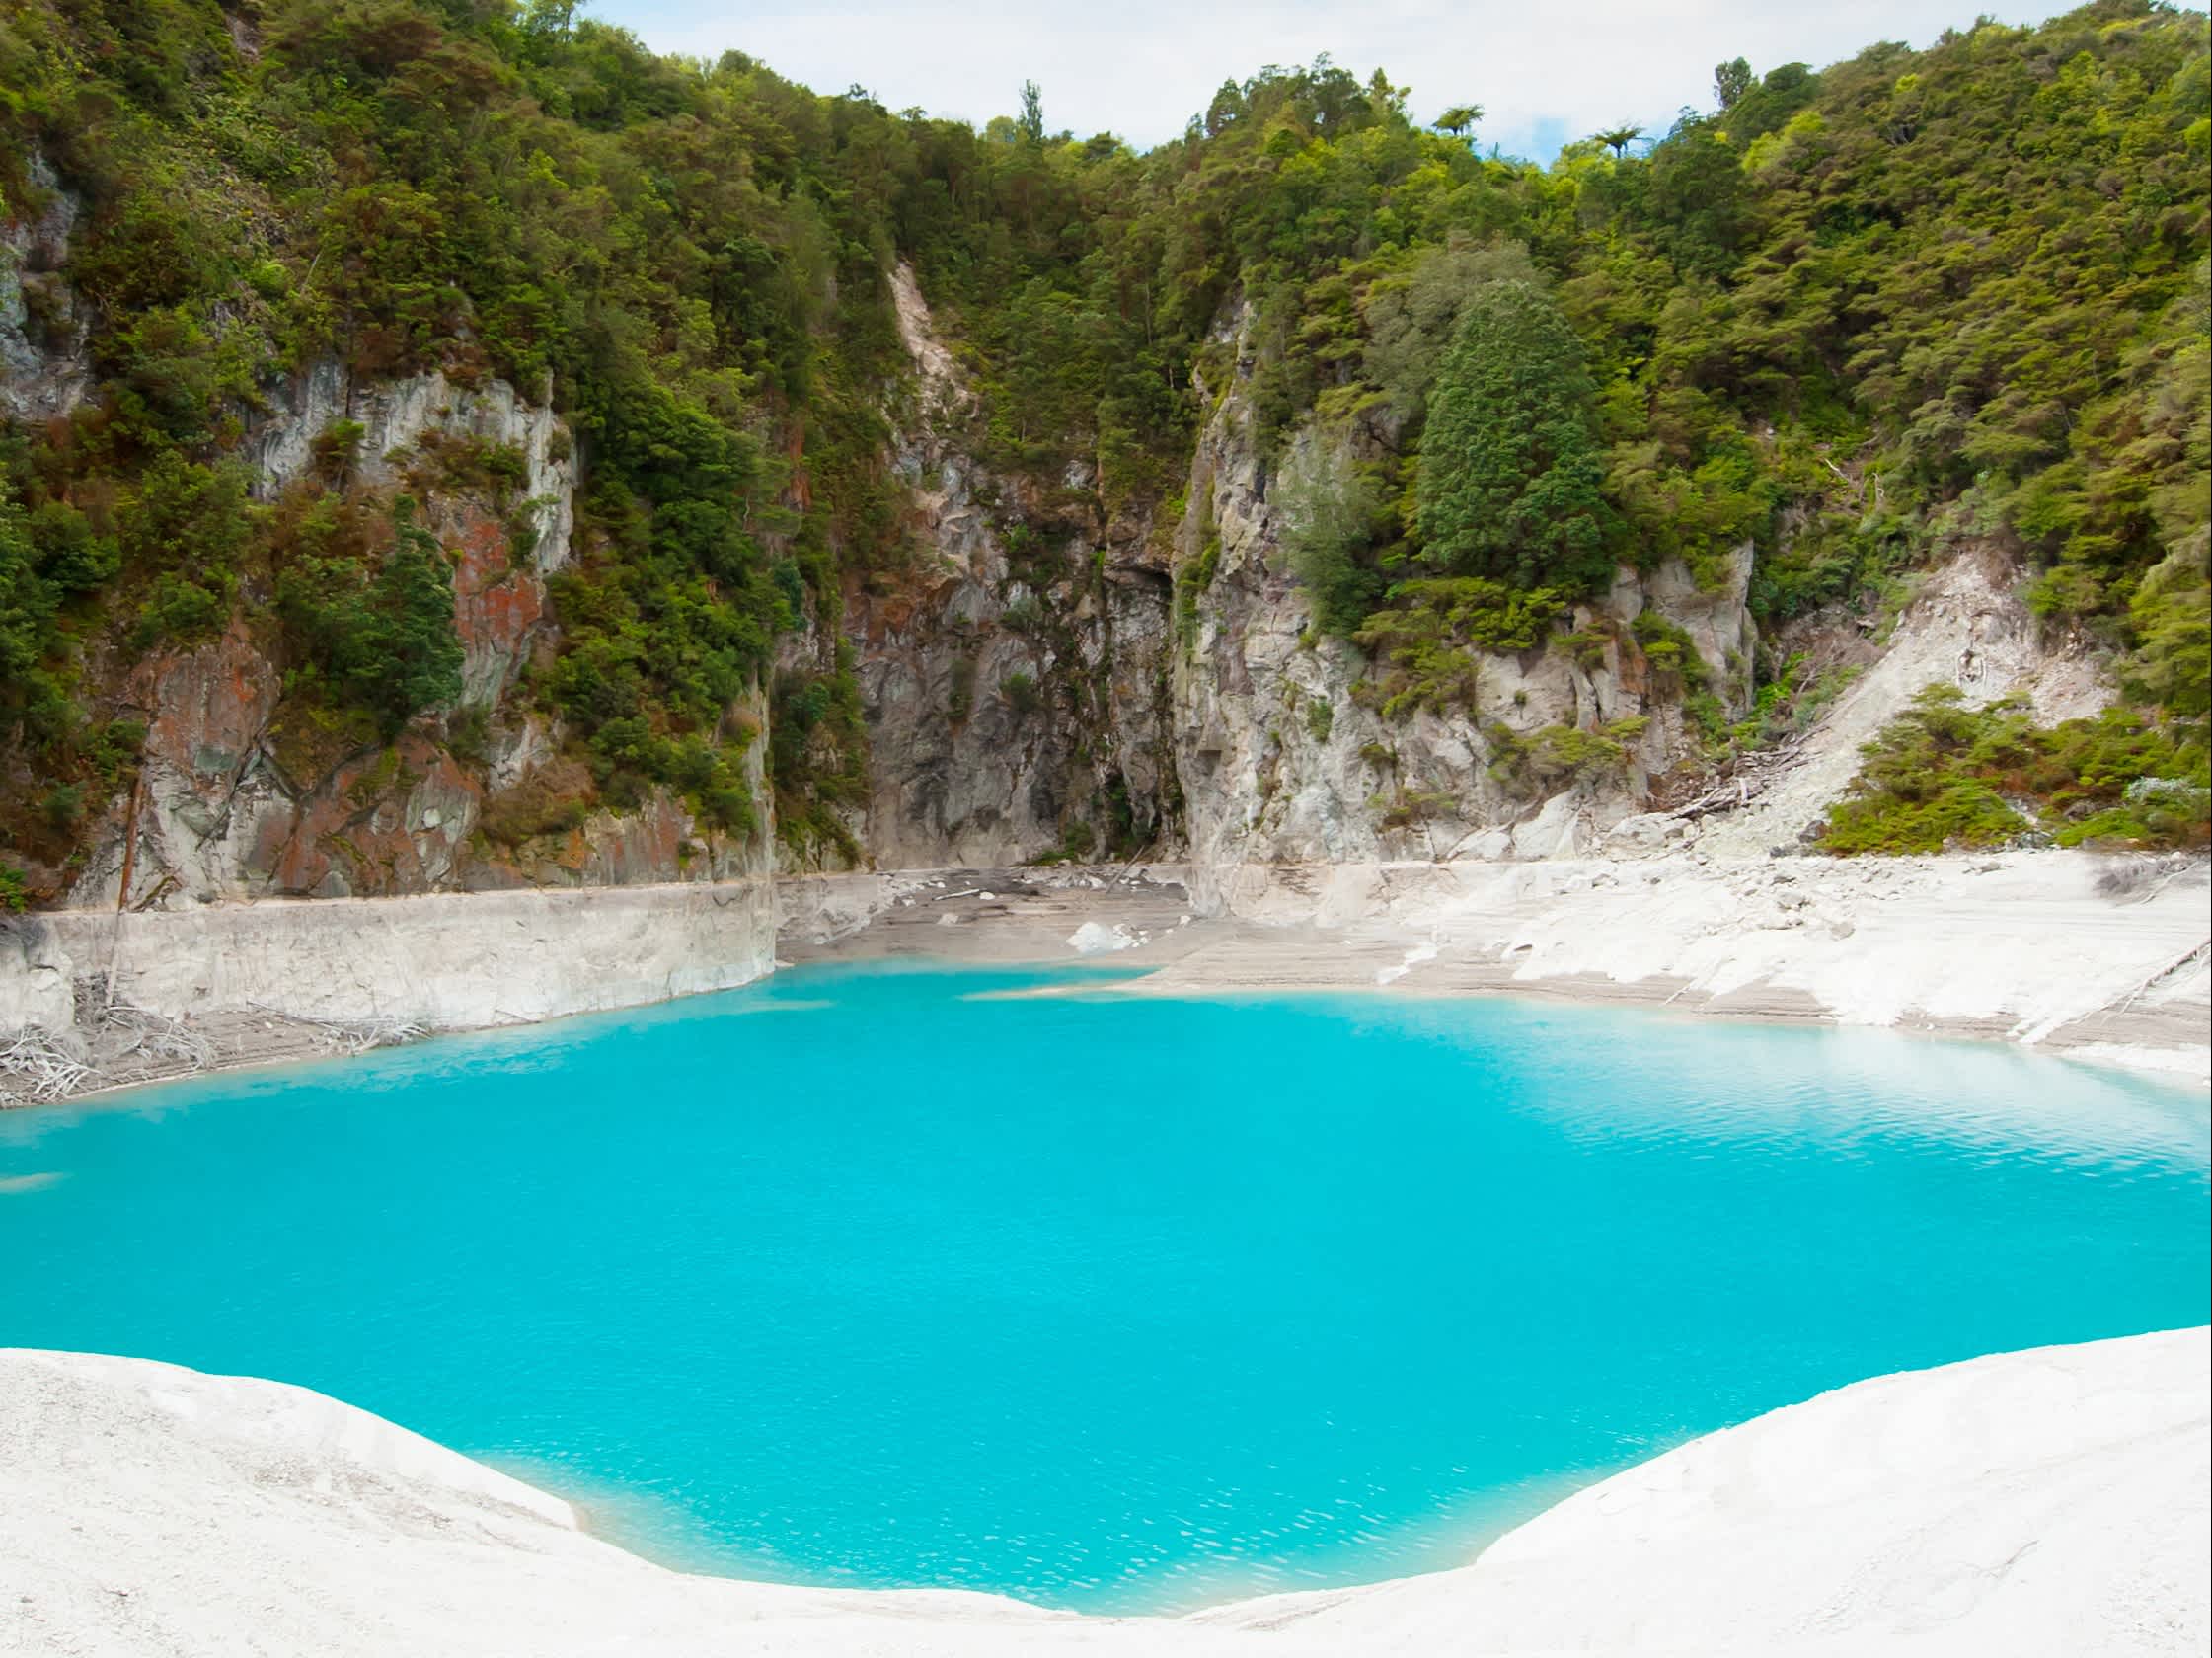 Geyser bleu turquoise  entouré de végétation et sable blanc, dans un des parcs nationaux de la région de Rotorua, sur l'ile du nord en Nouvelle-Zélande.